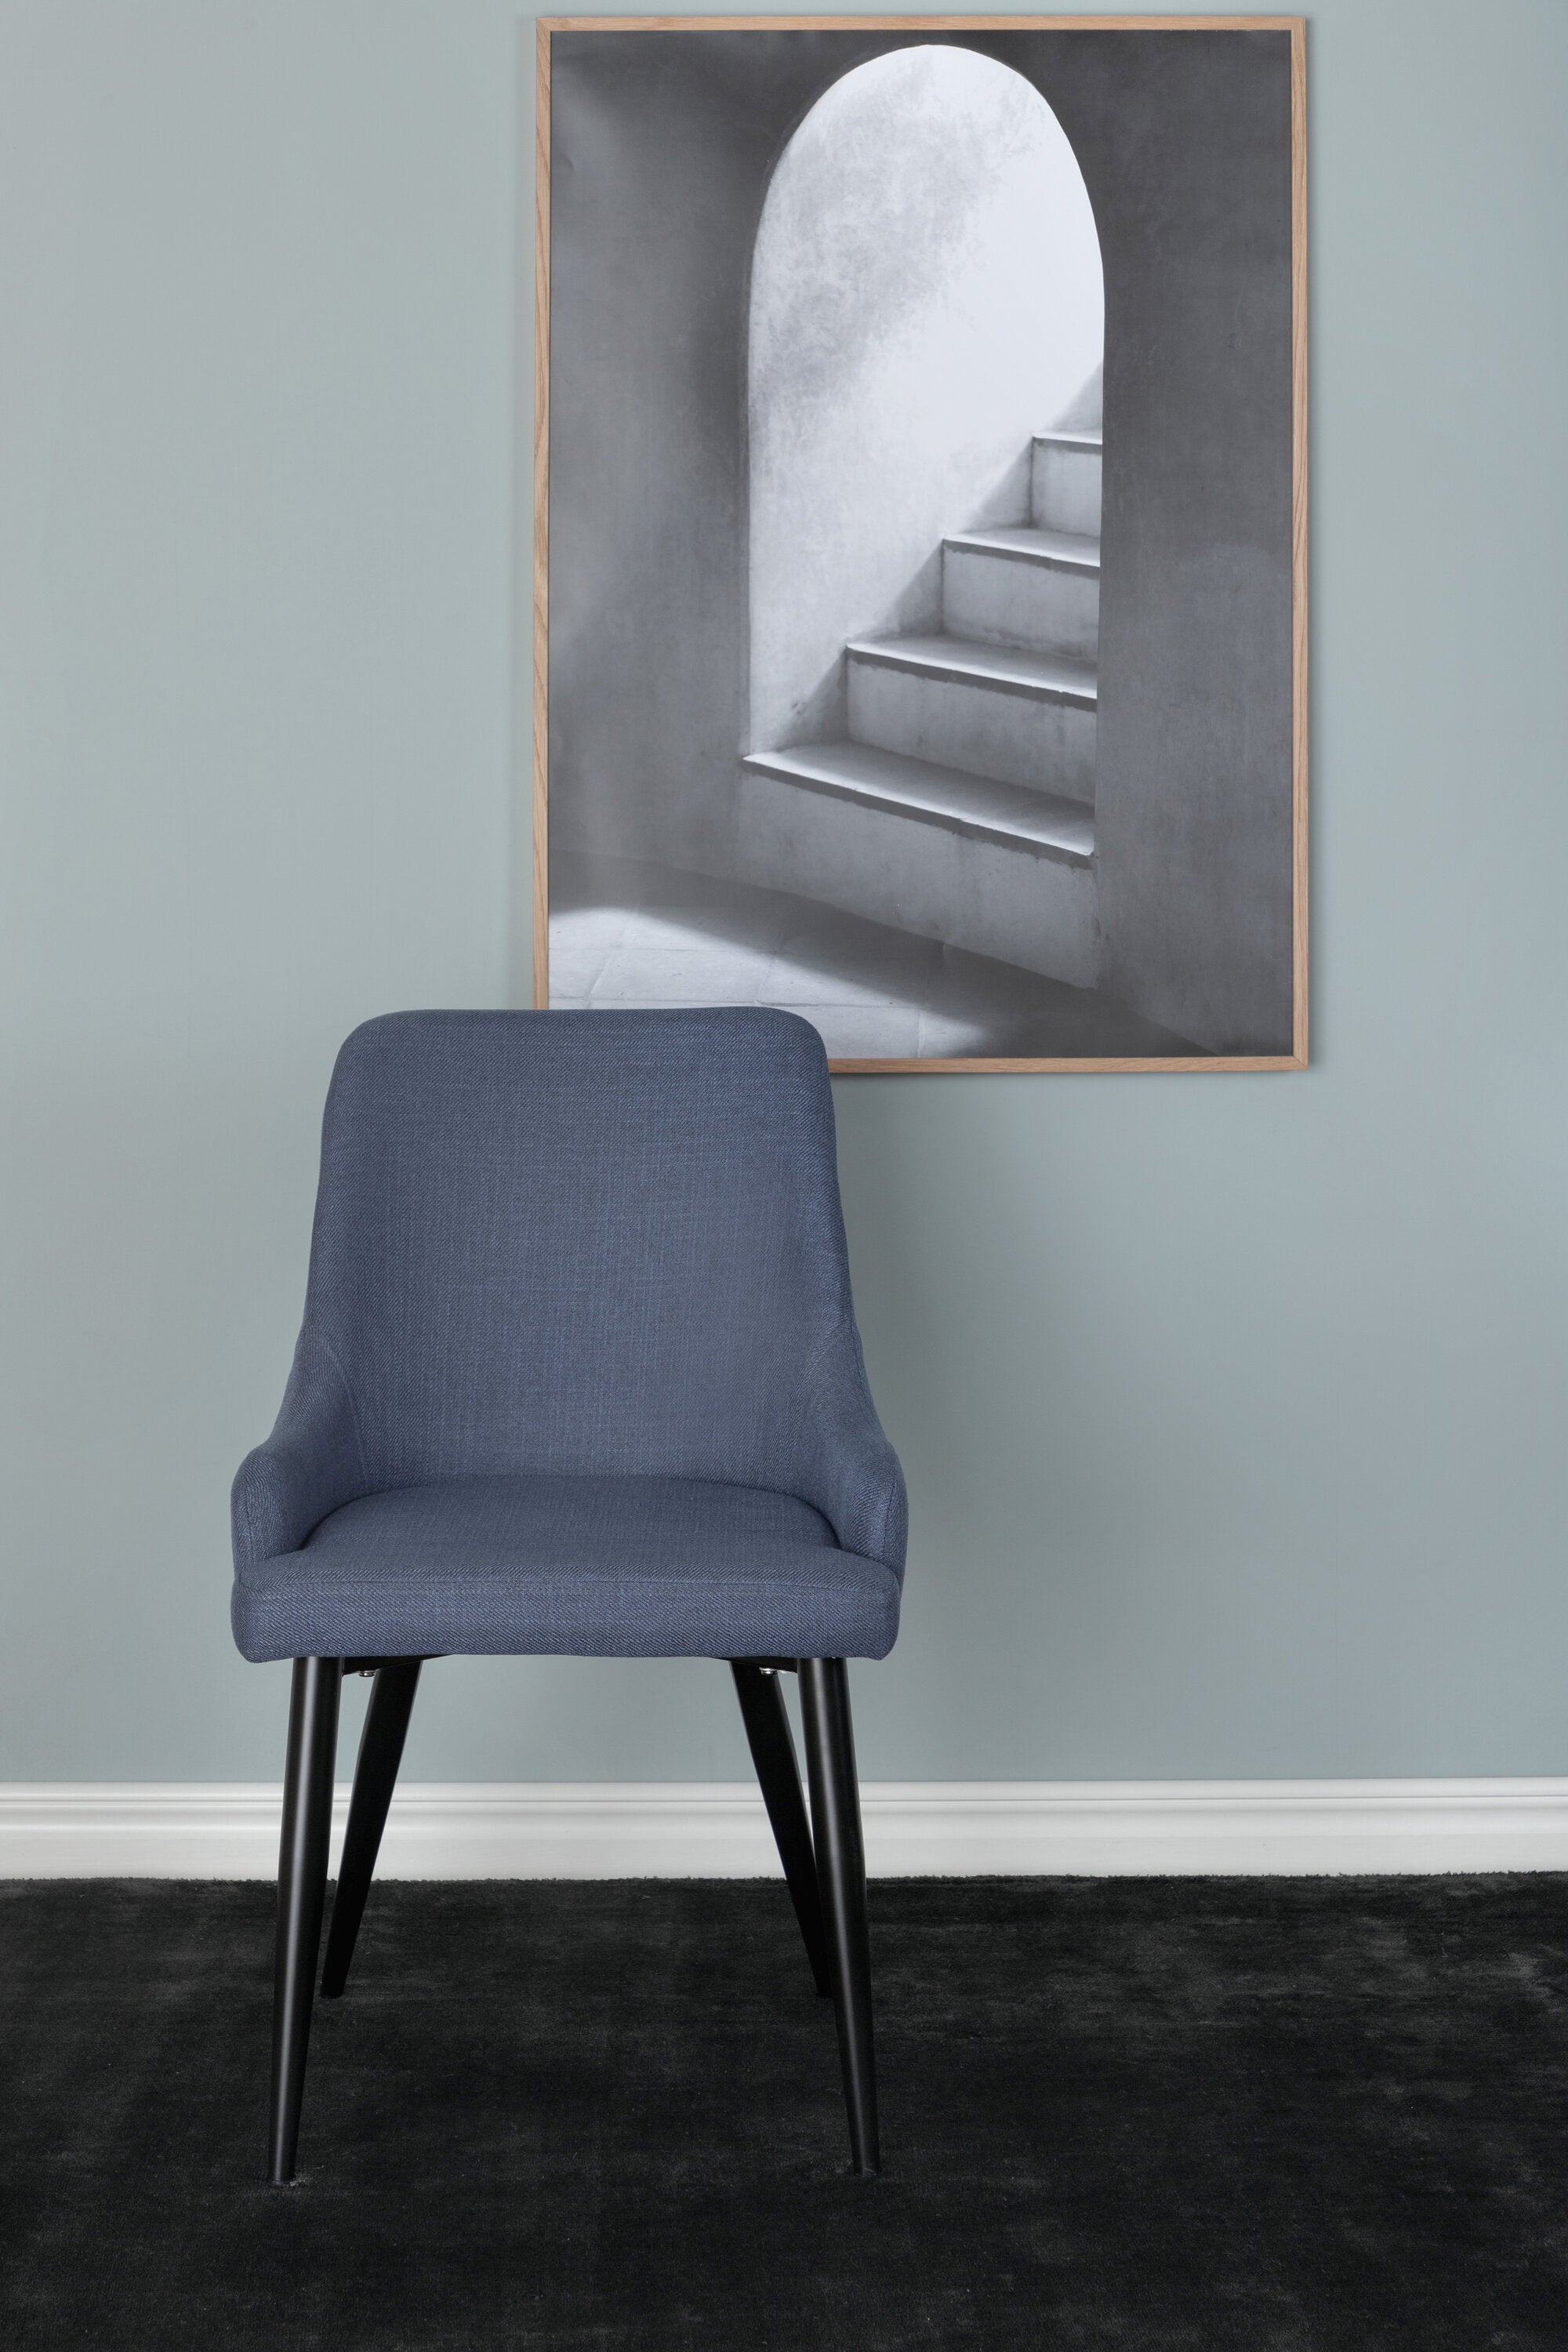 Plaza Stuhl in Blau / Schwarz präsentiert im Onlineshop von KAQTU Design AG. Stuhl ist von Venture Home